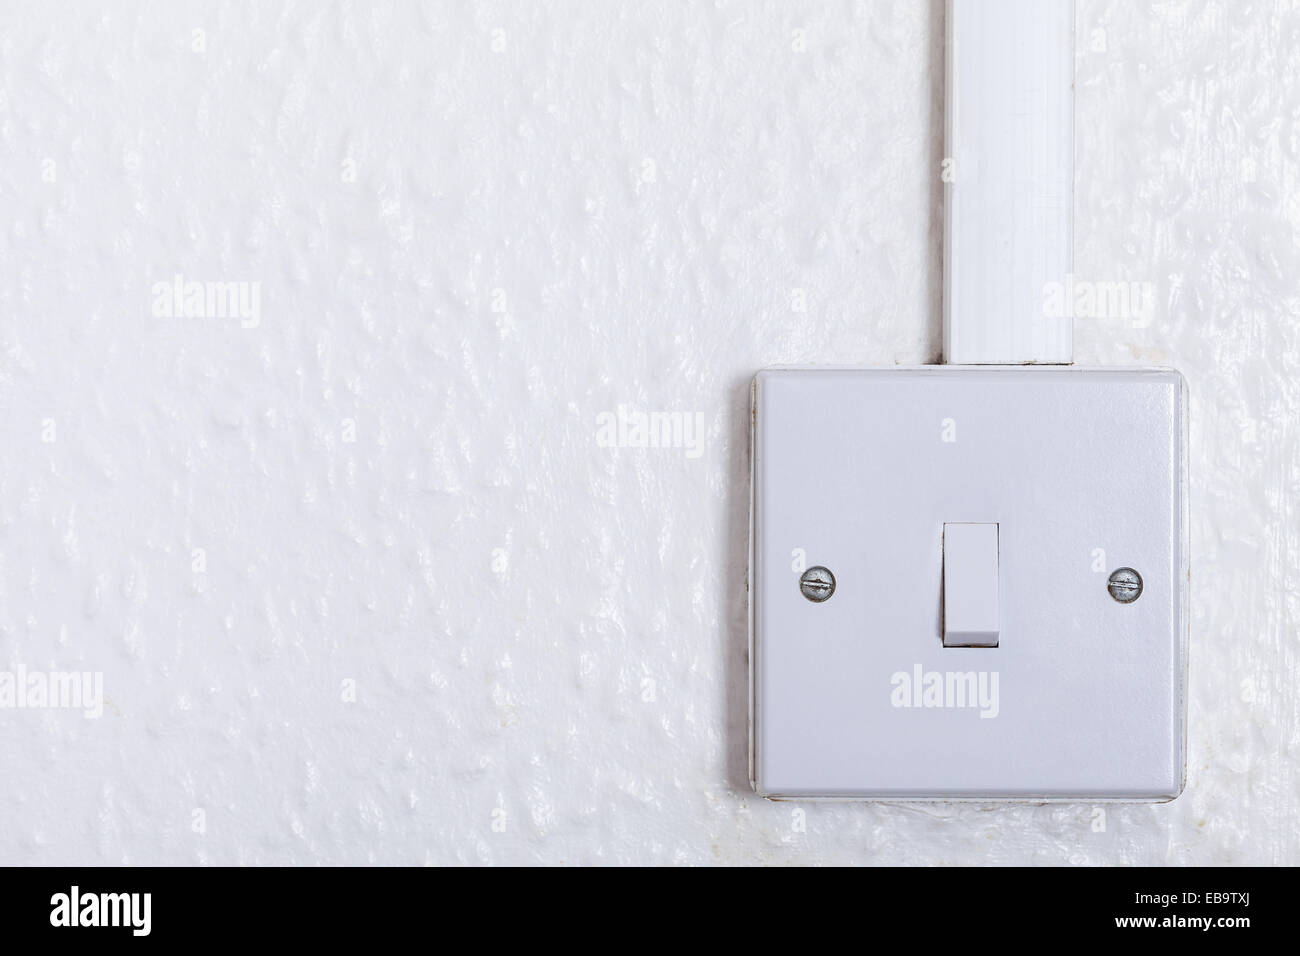 Interruptores de interruptor de luz de pared basculante